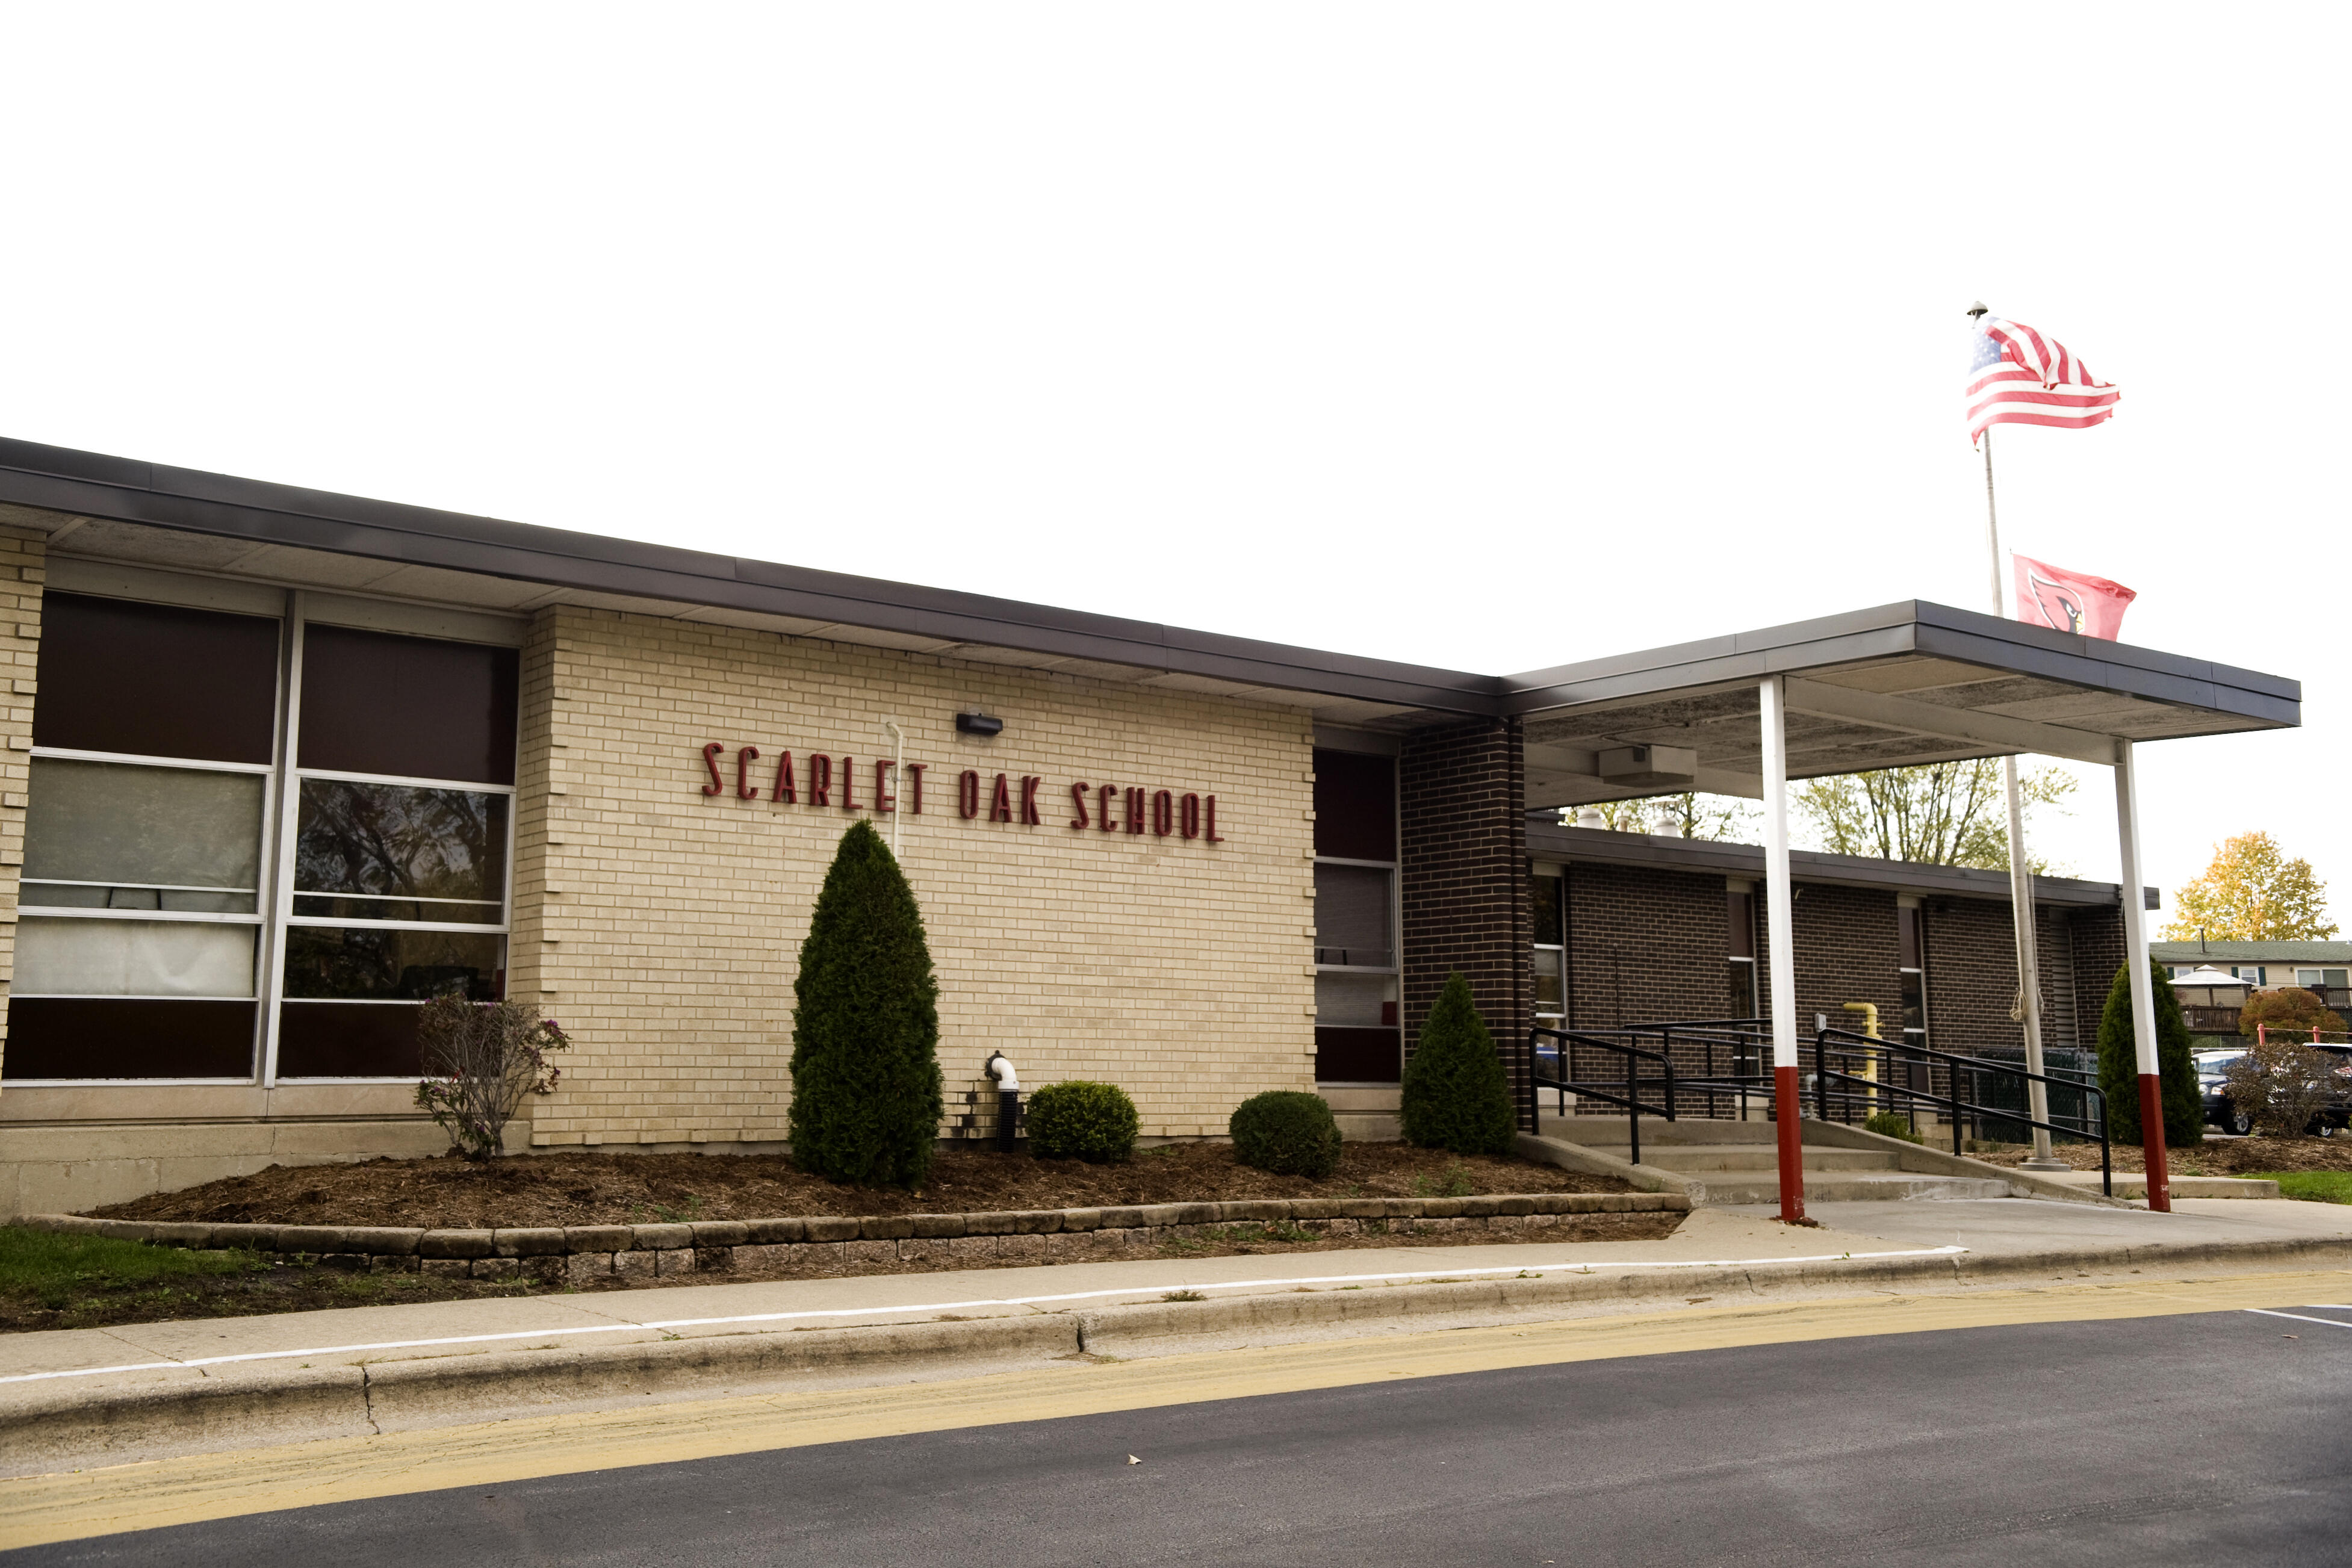 Scarlet Oak School Building